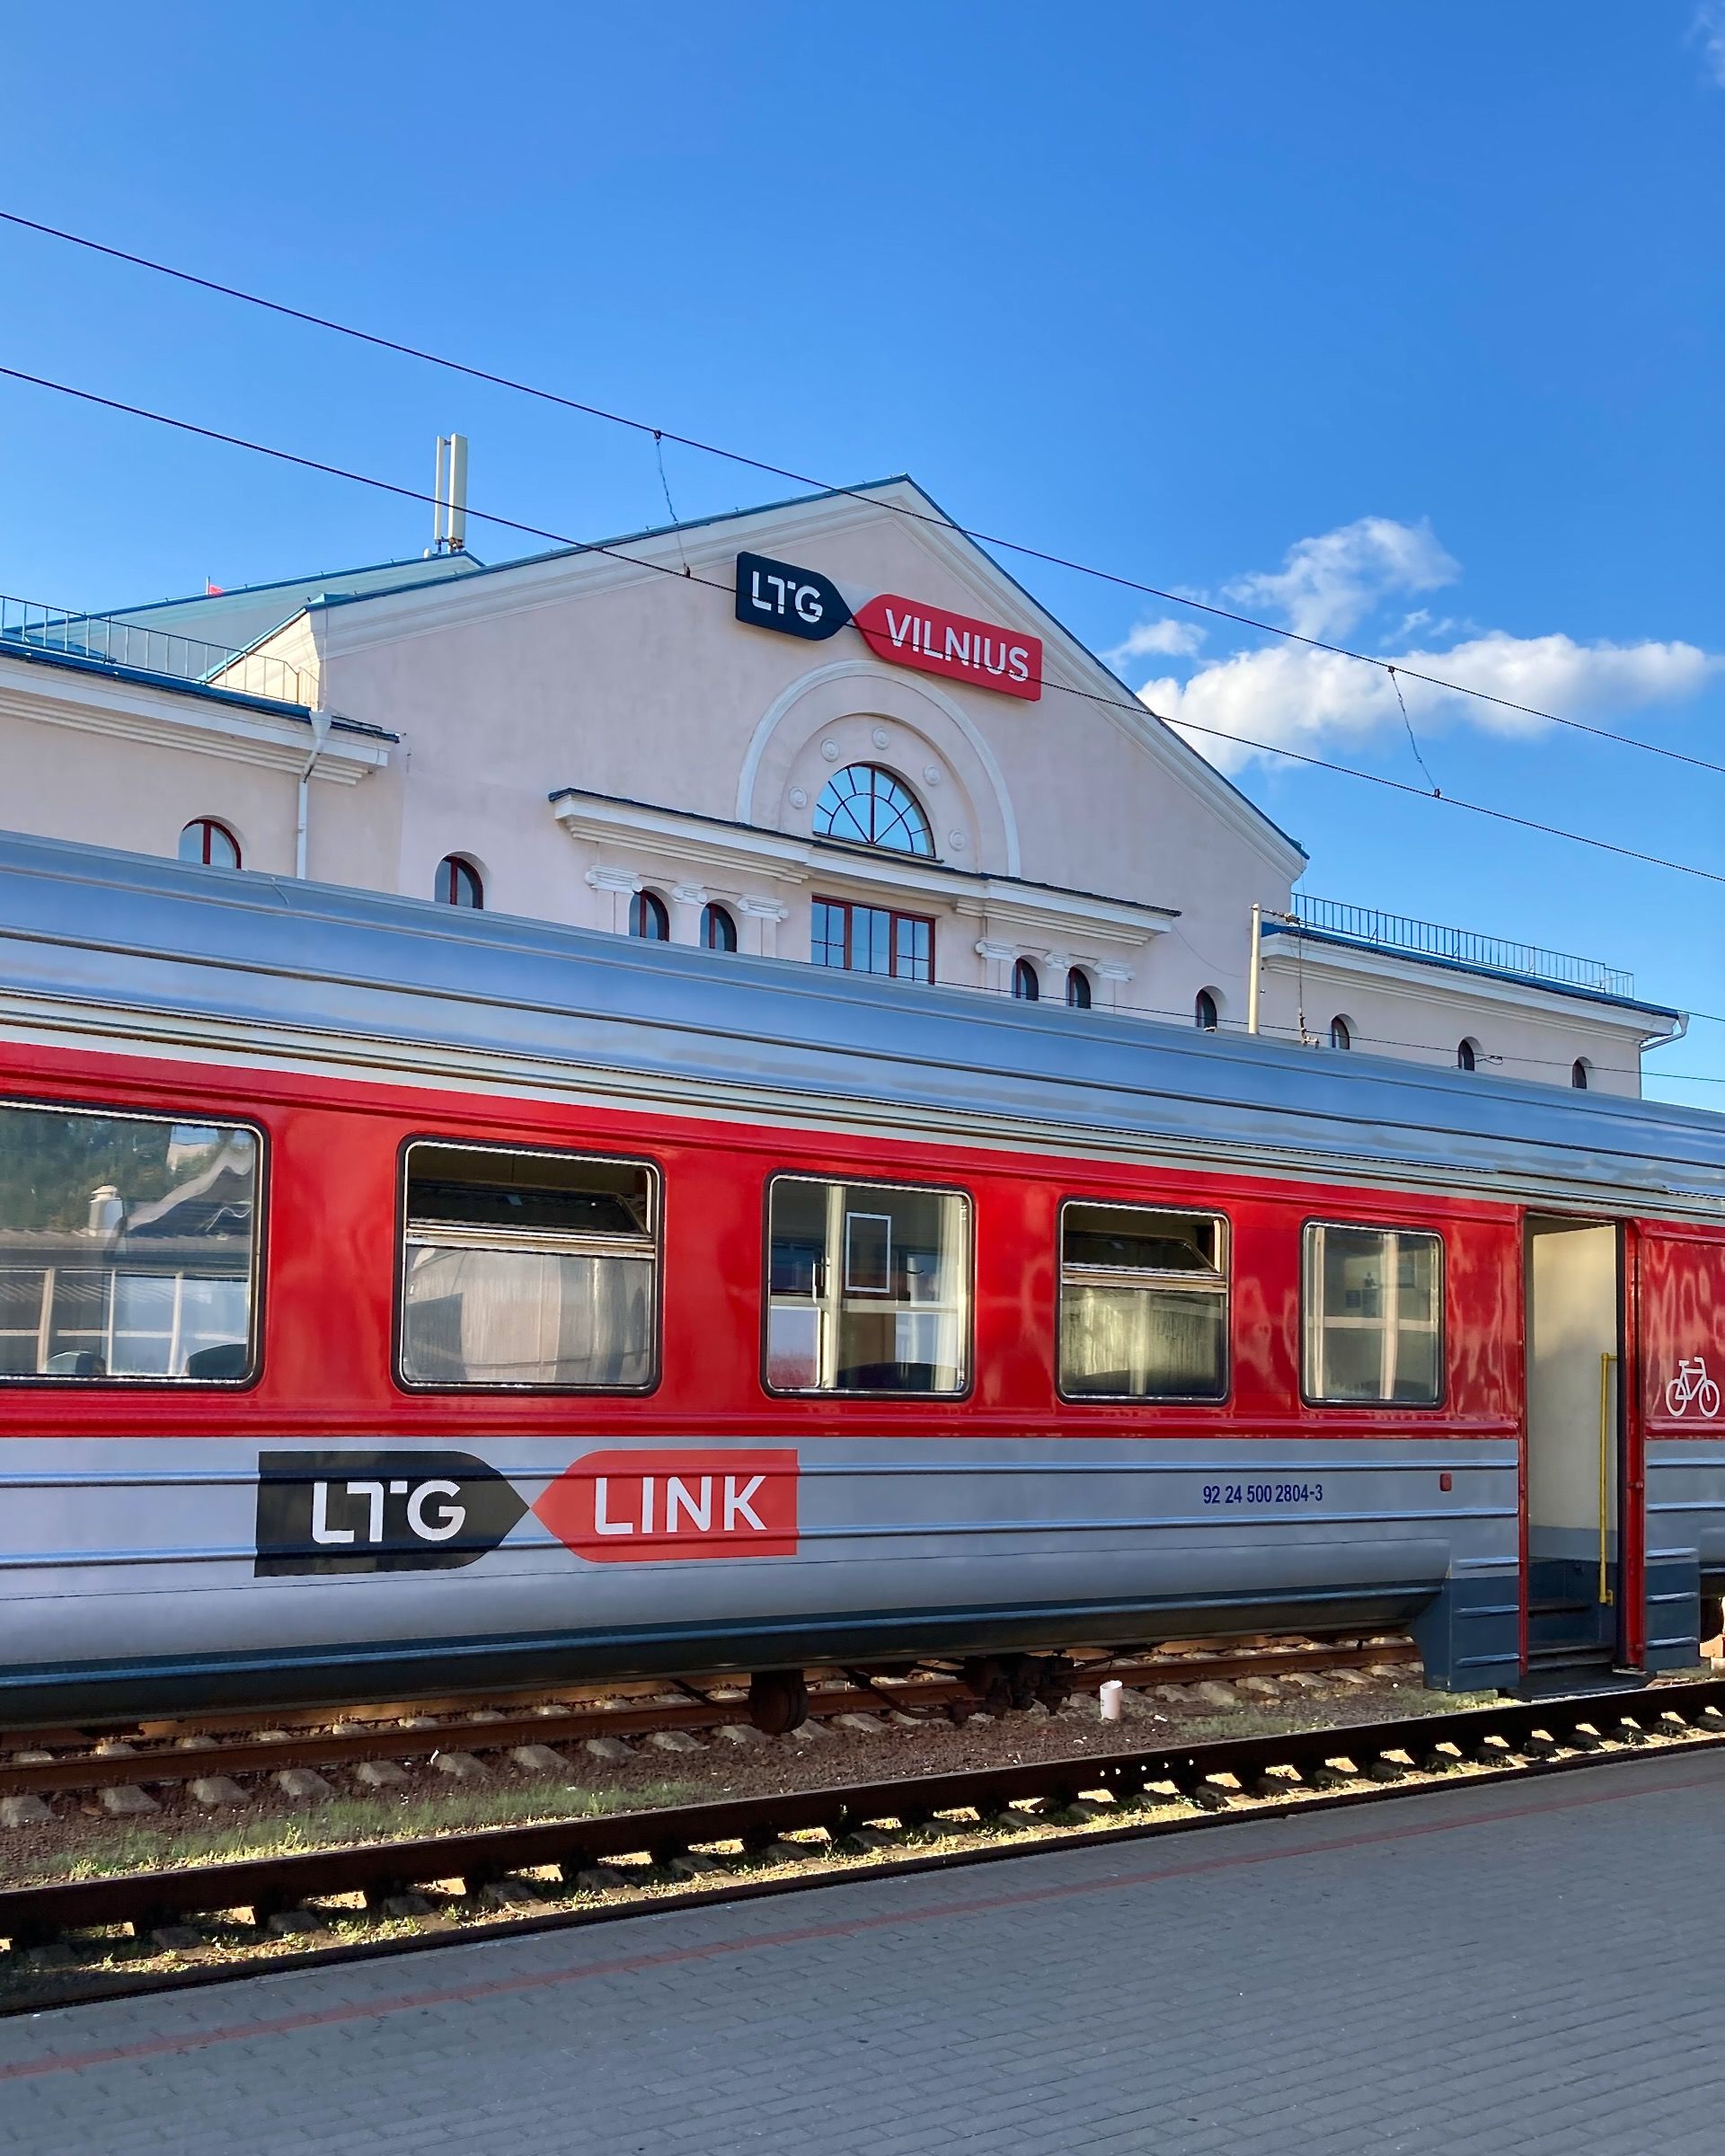 Bahnhof von Vilnius mit einem Zug im Vordergrund